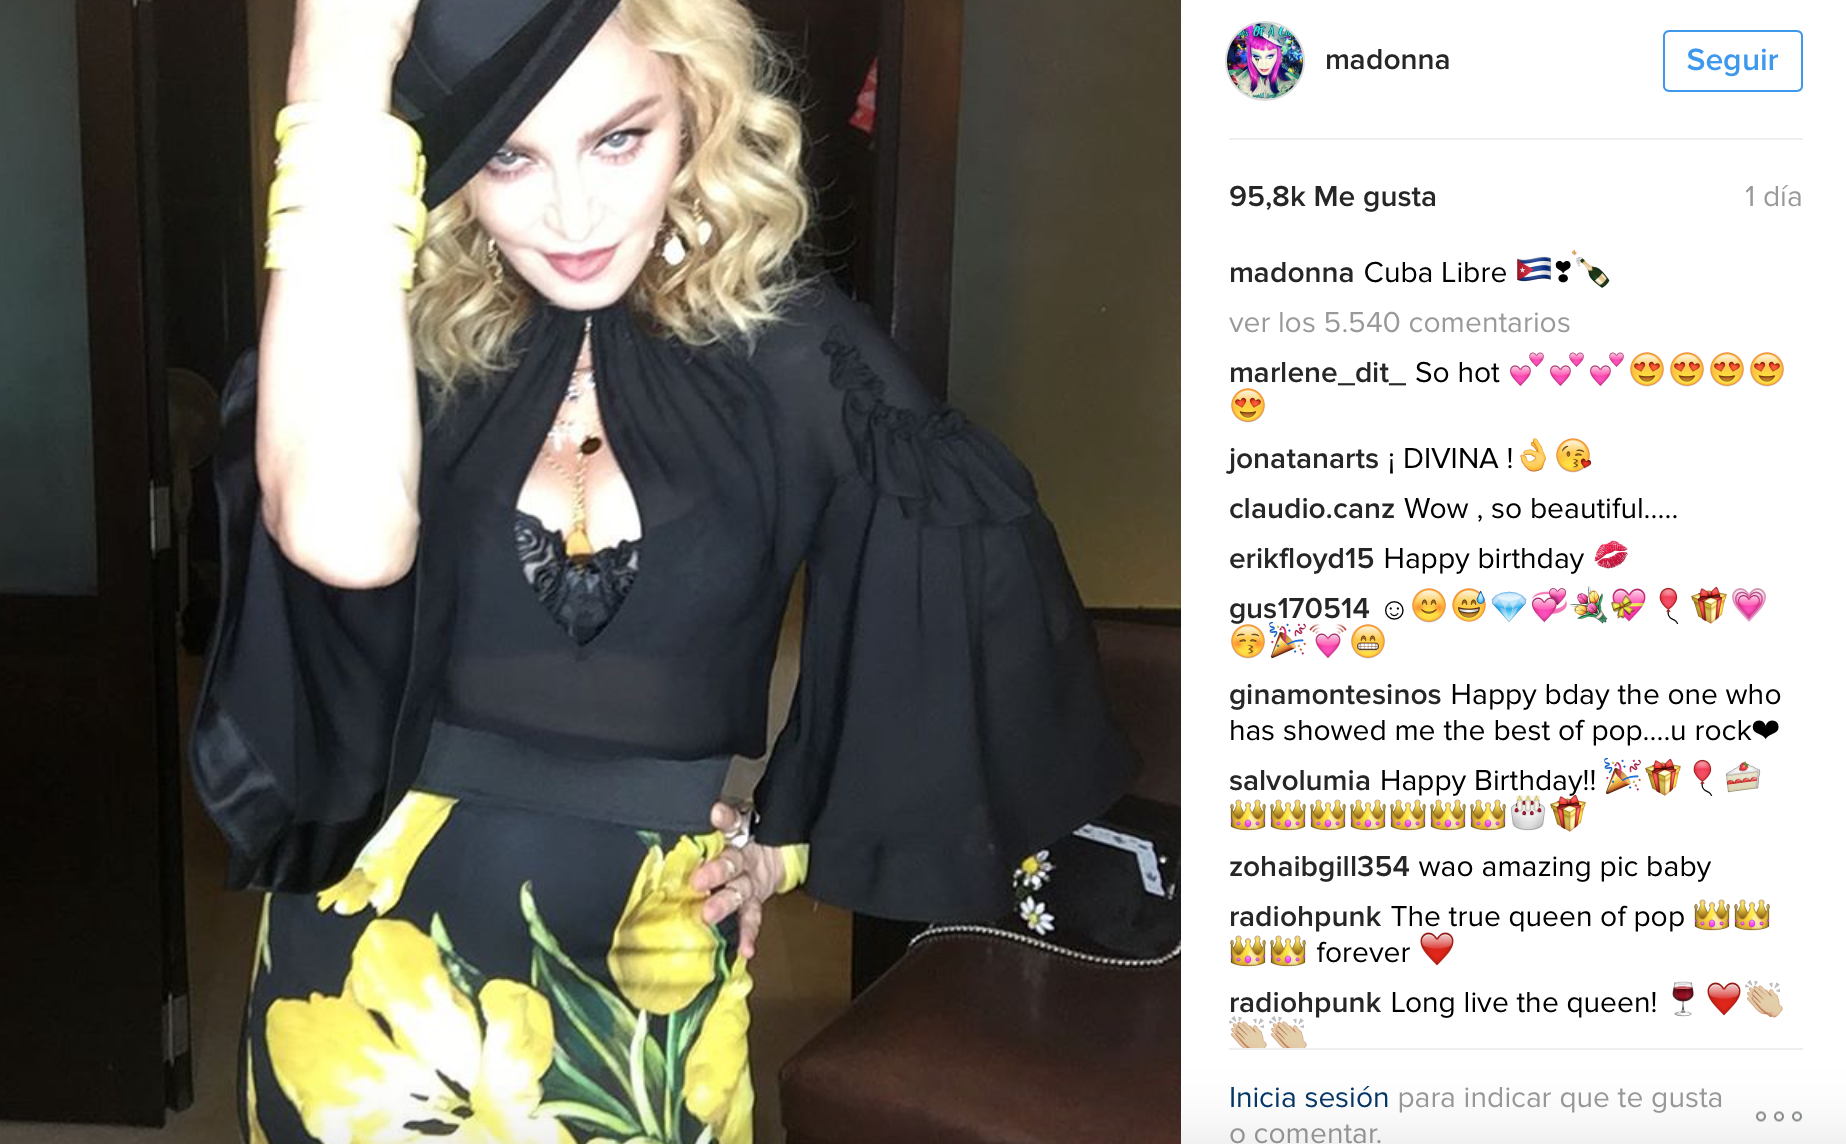 ¿Qué hará Madonna para celebrar sus 60? El año pasado montó un 'fiestón gitano' para los 59 años